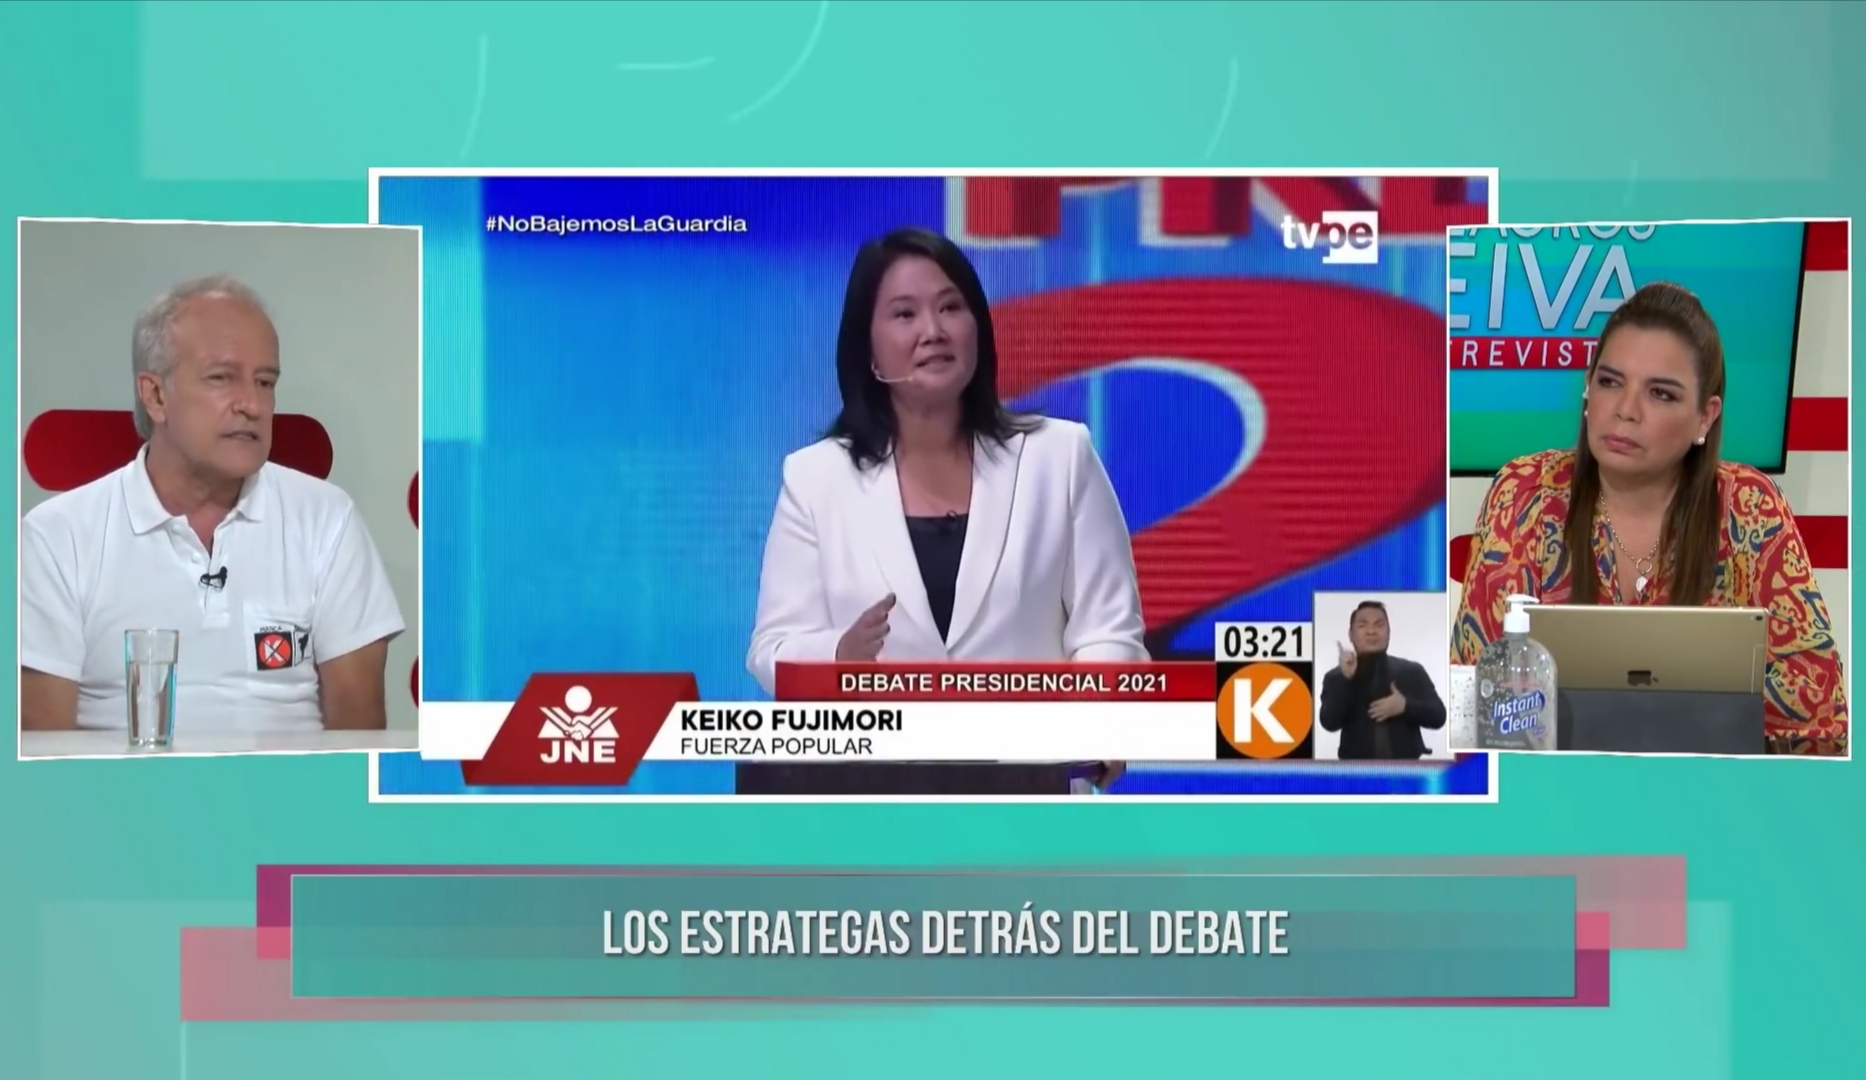 Hernando Guerra: “Tenemos propuestas serias, no estamos en el populismo”